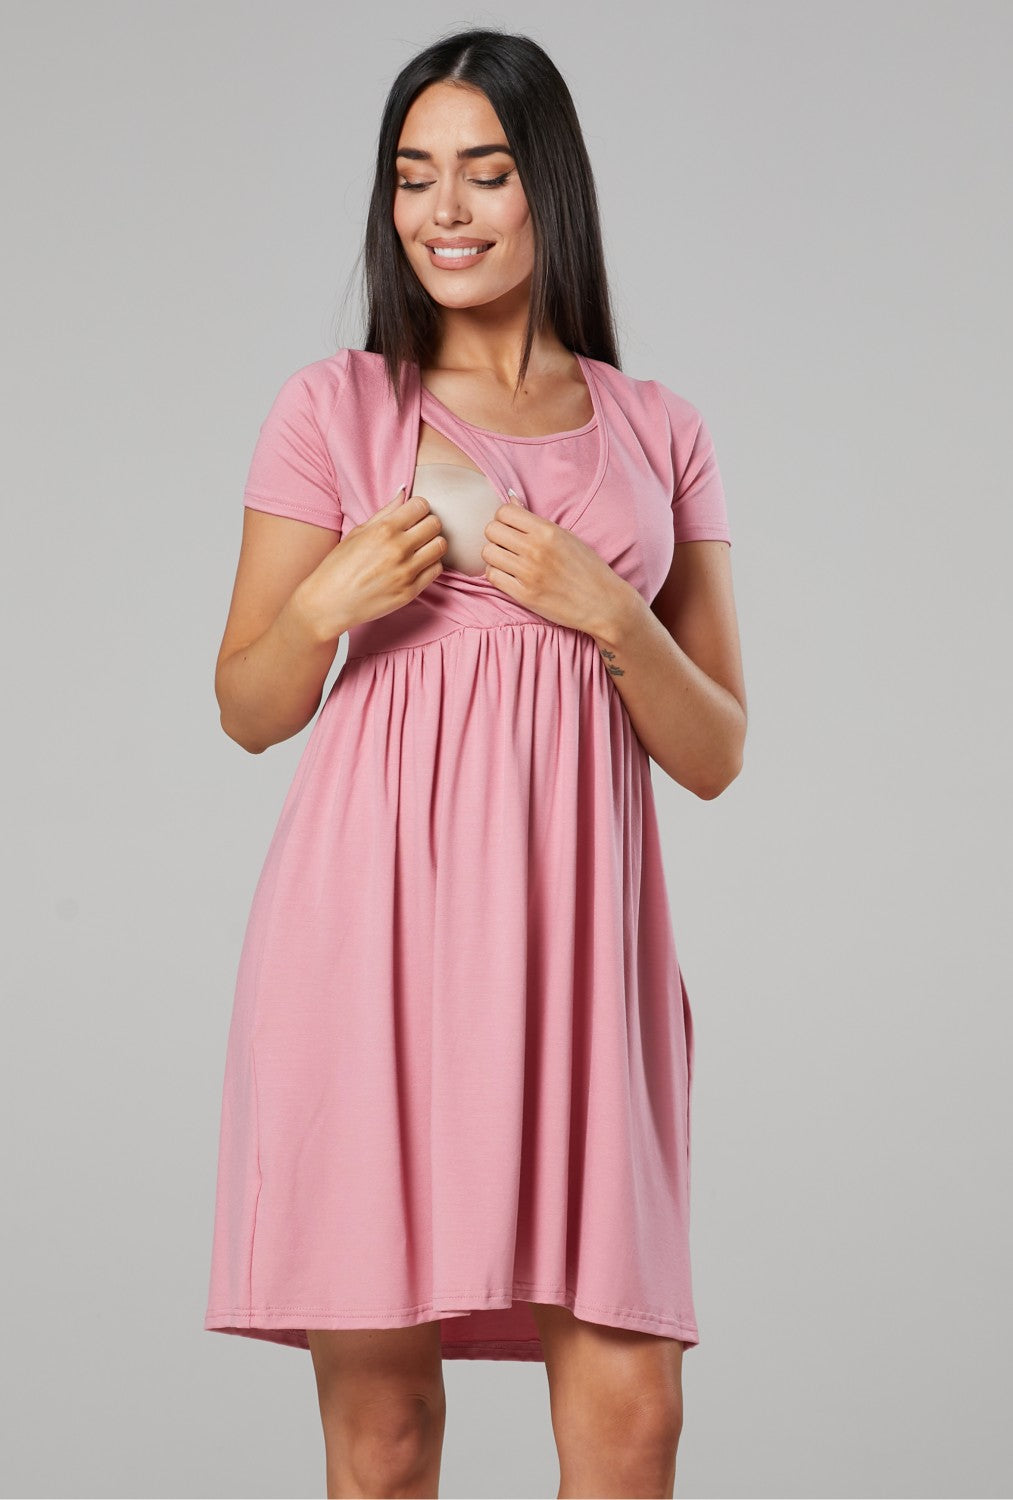 Maternity Nursing Waist Pleated Dress